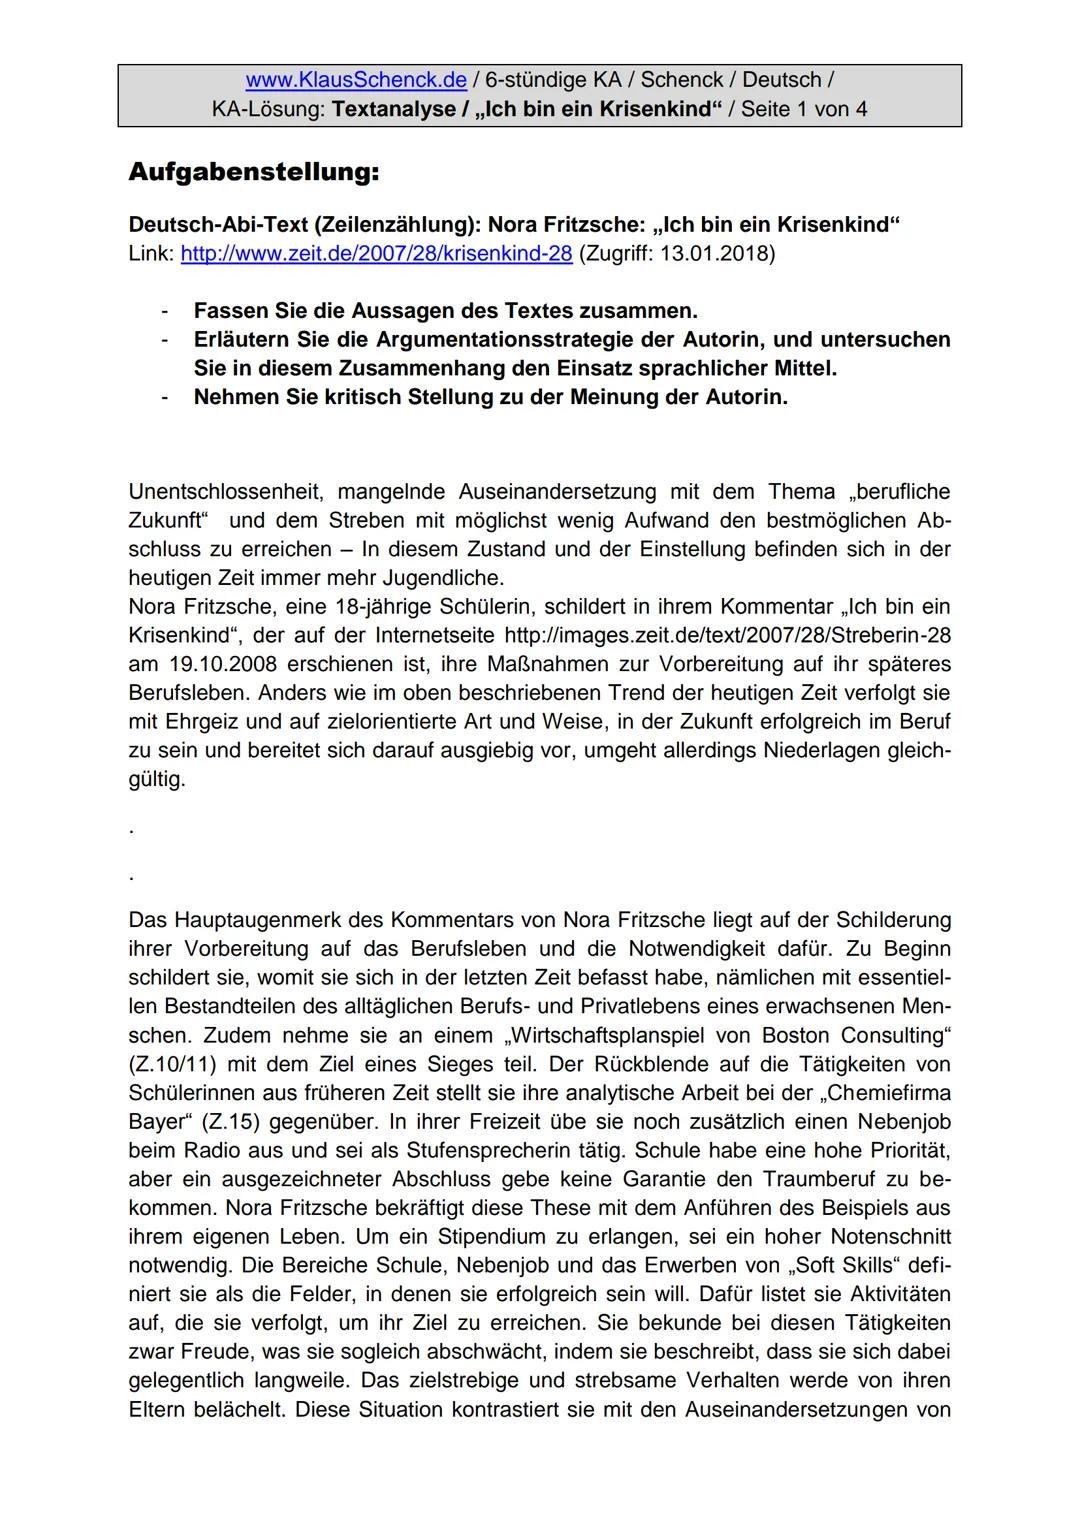 www.KlausSchenck.de/ 6-stündige KA / Schenck / Deutsch /
KA-Lösung: Textanalyse / ,,Ich bin ein Krisenkind" / Seite 1 von 4
Aufgabenstellung